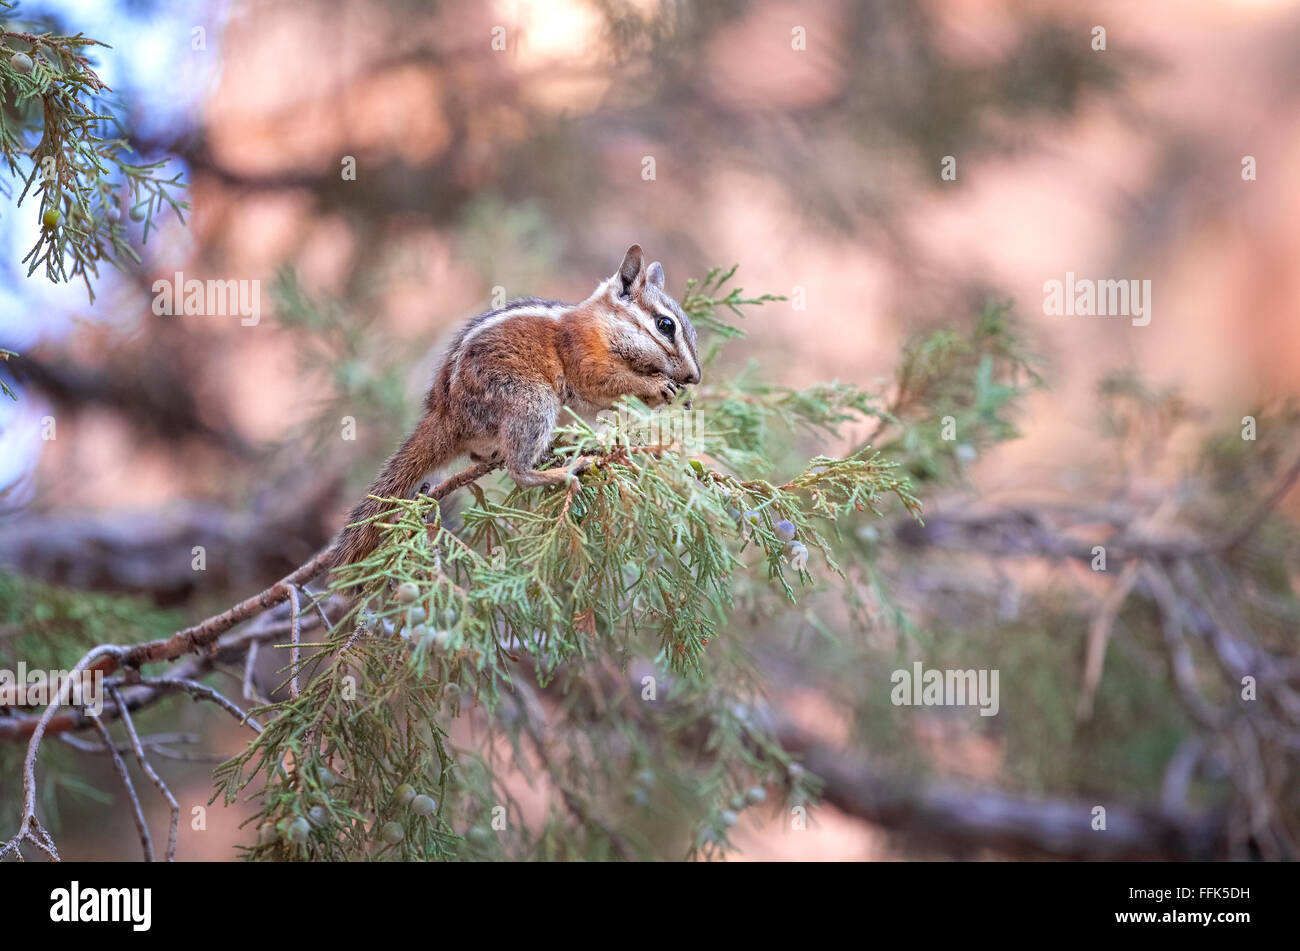 Eichhörnchen Essen an einem Baum, geringe Schärfentiefe. Stockfoto